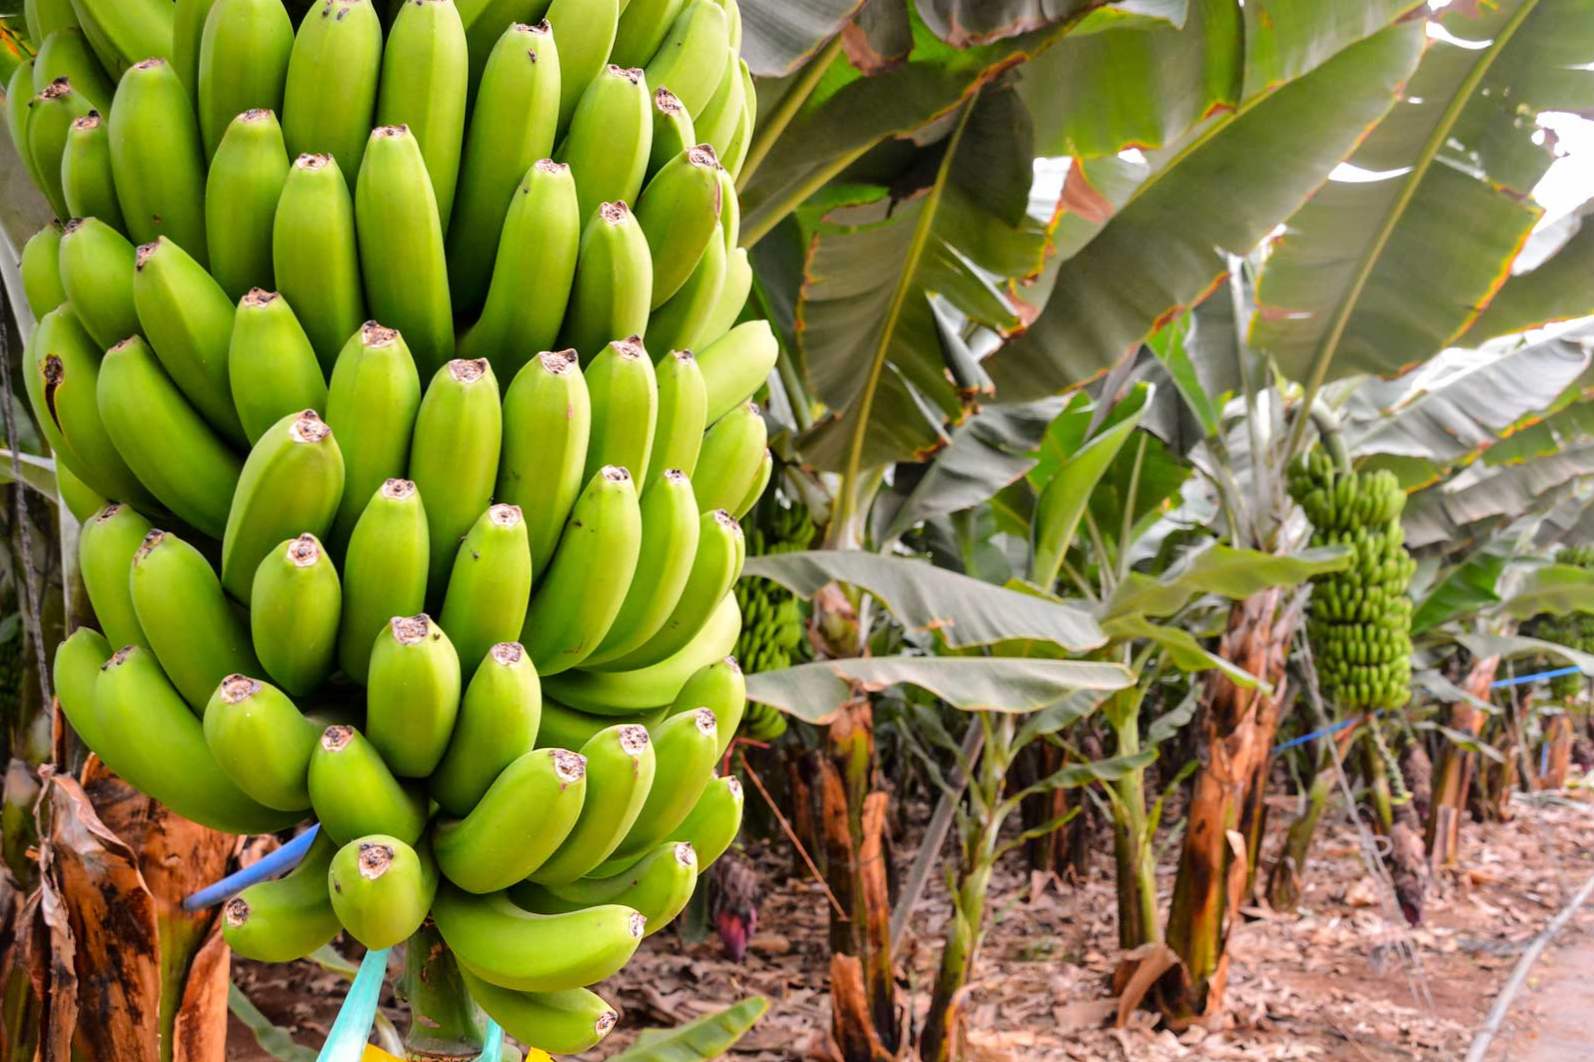 Jak i gdzie rosną banany w przyrodzie, na których drzewie iw jakich krajach